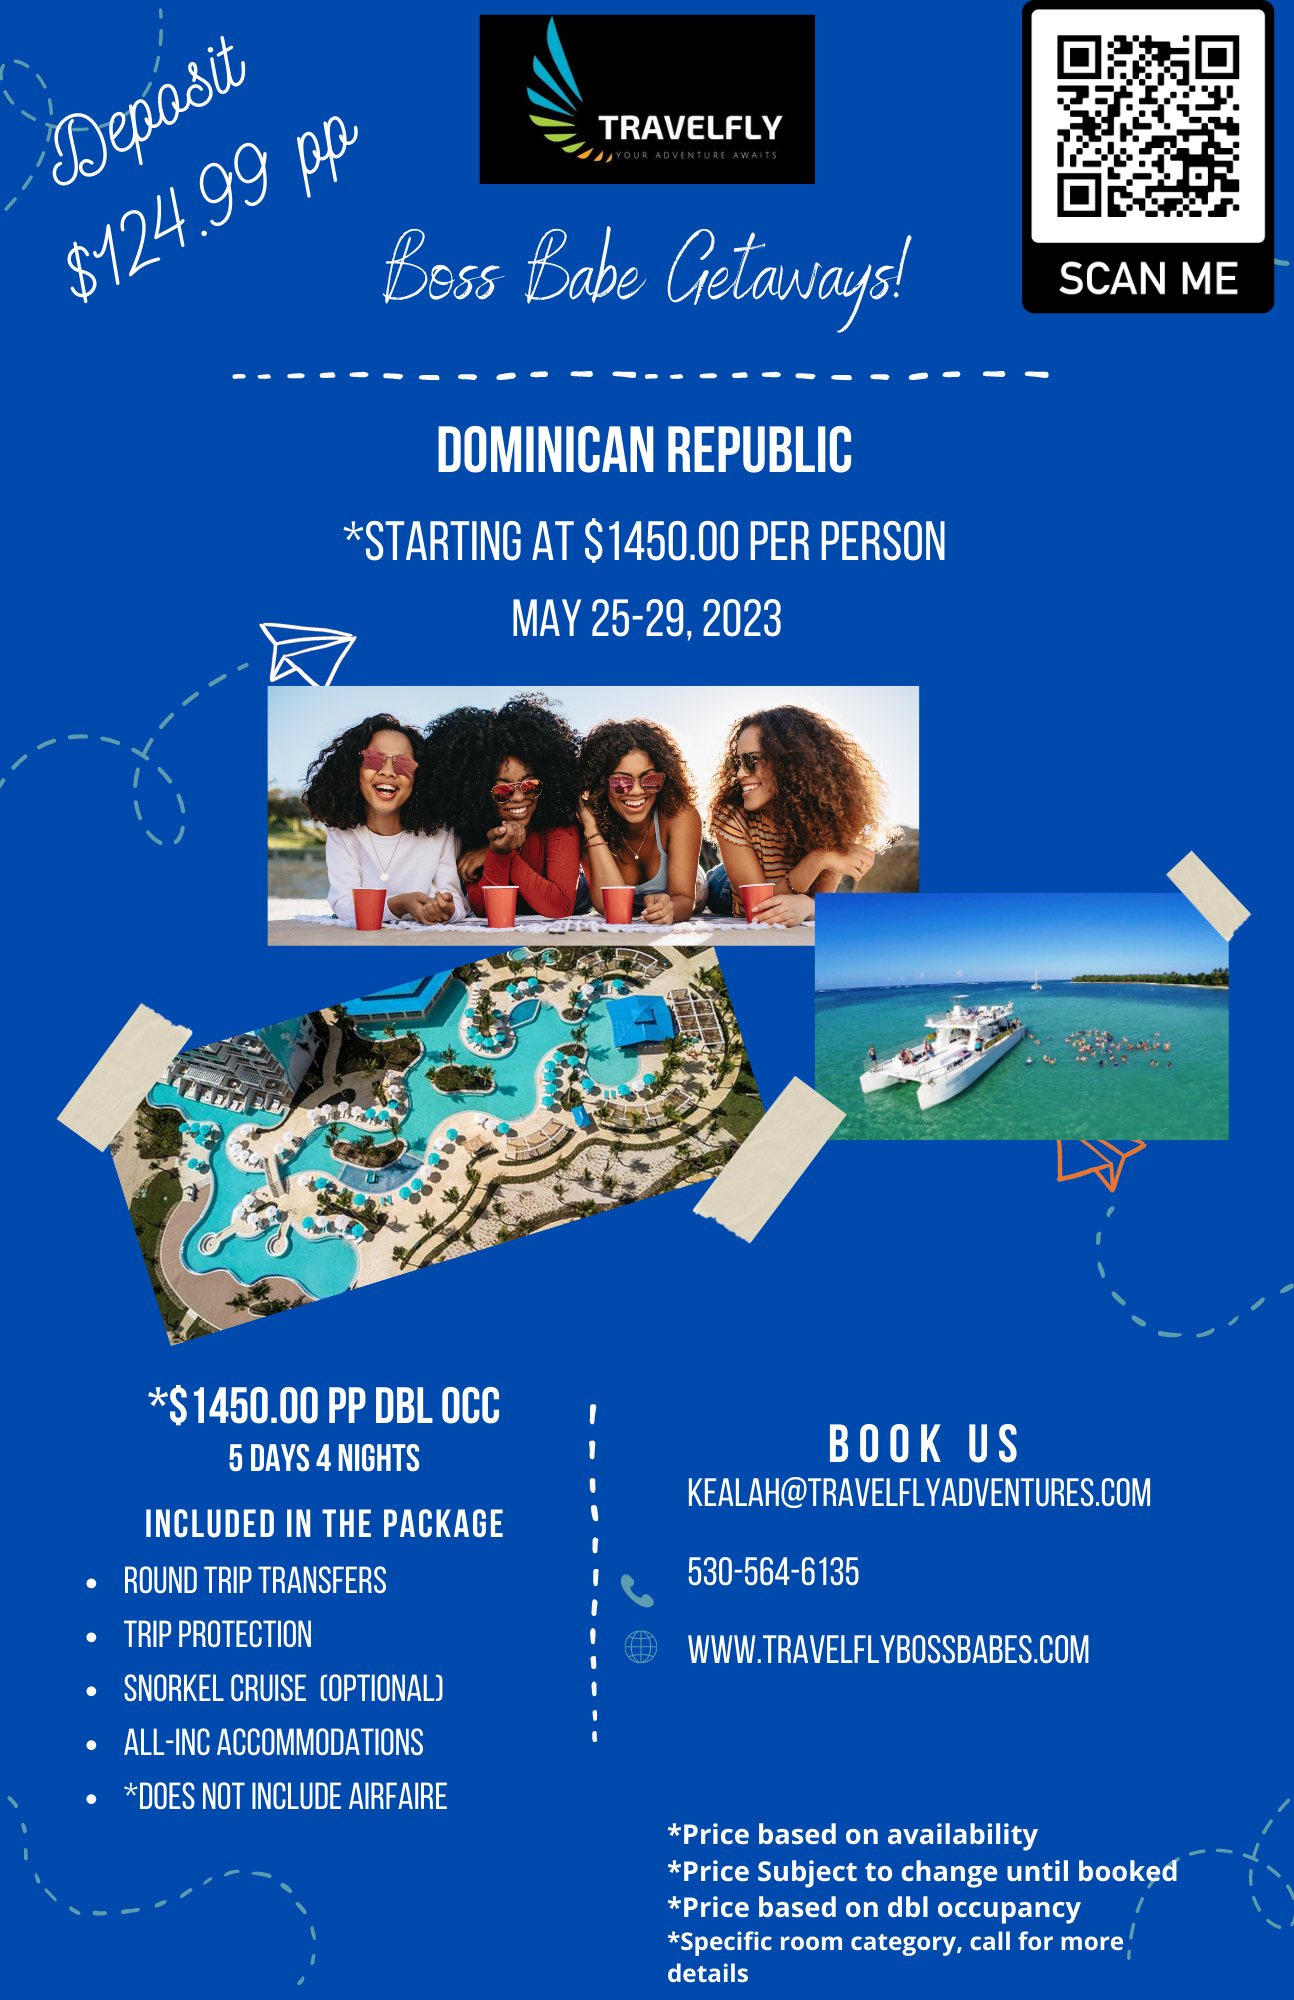 DOMINICAN REPUBLIC (2)